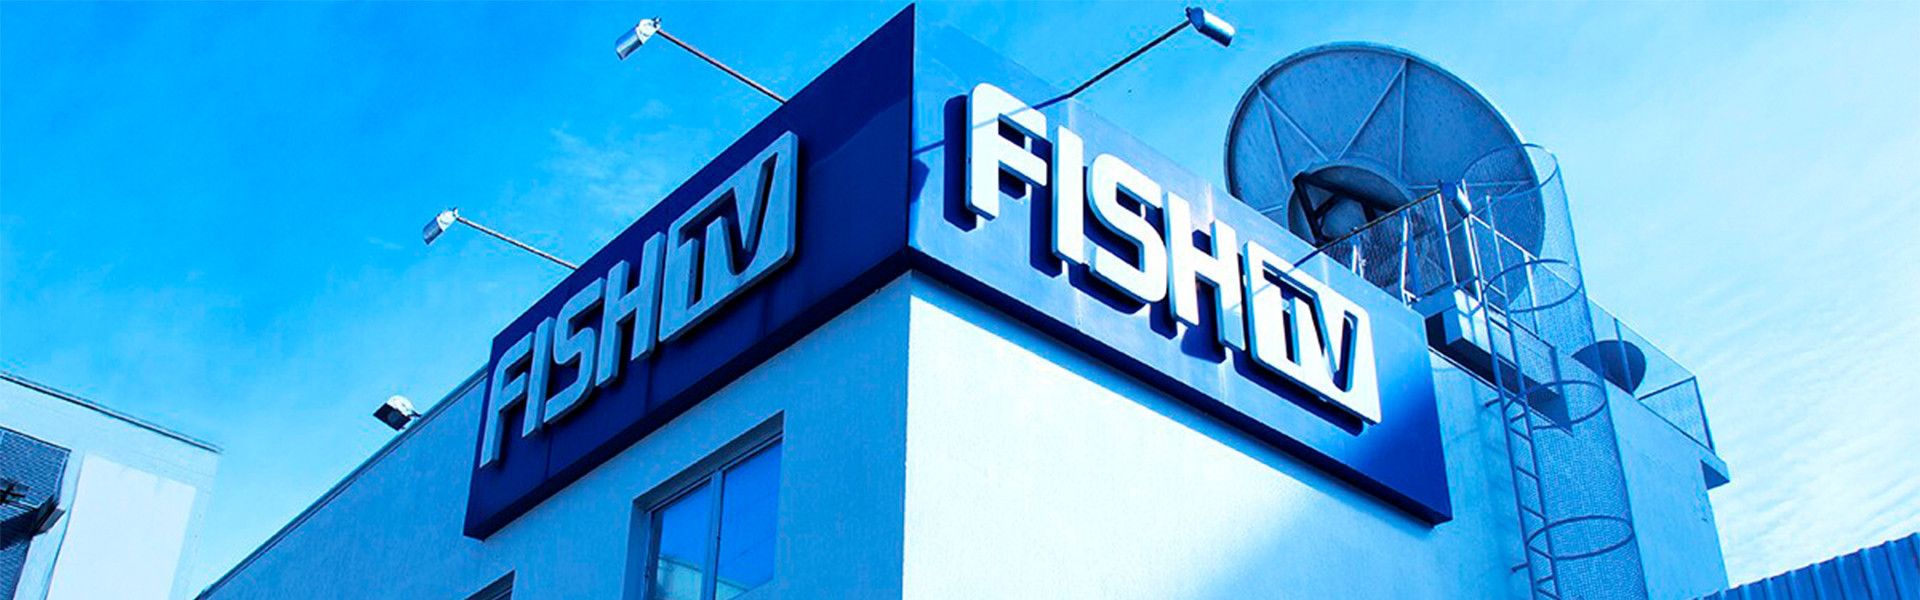 Fish TV 10 anos: conheça a nossa história!